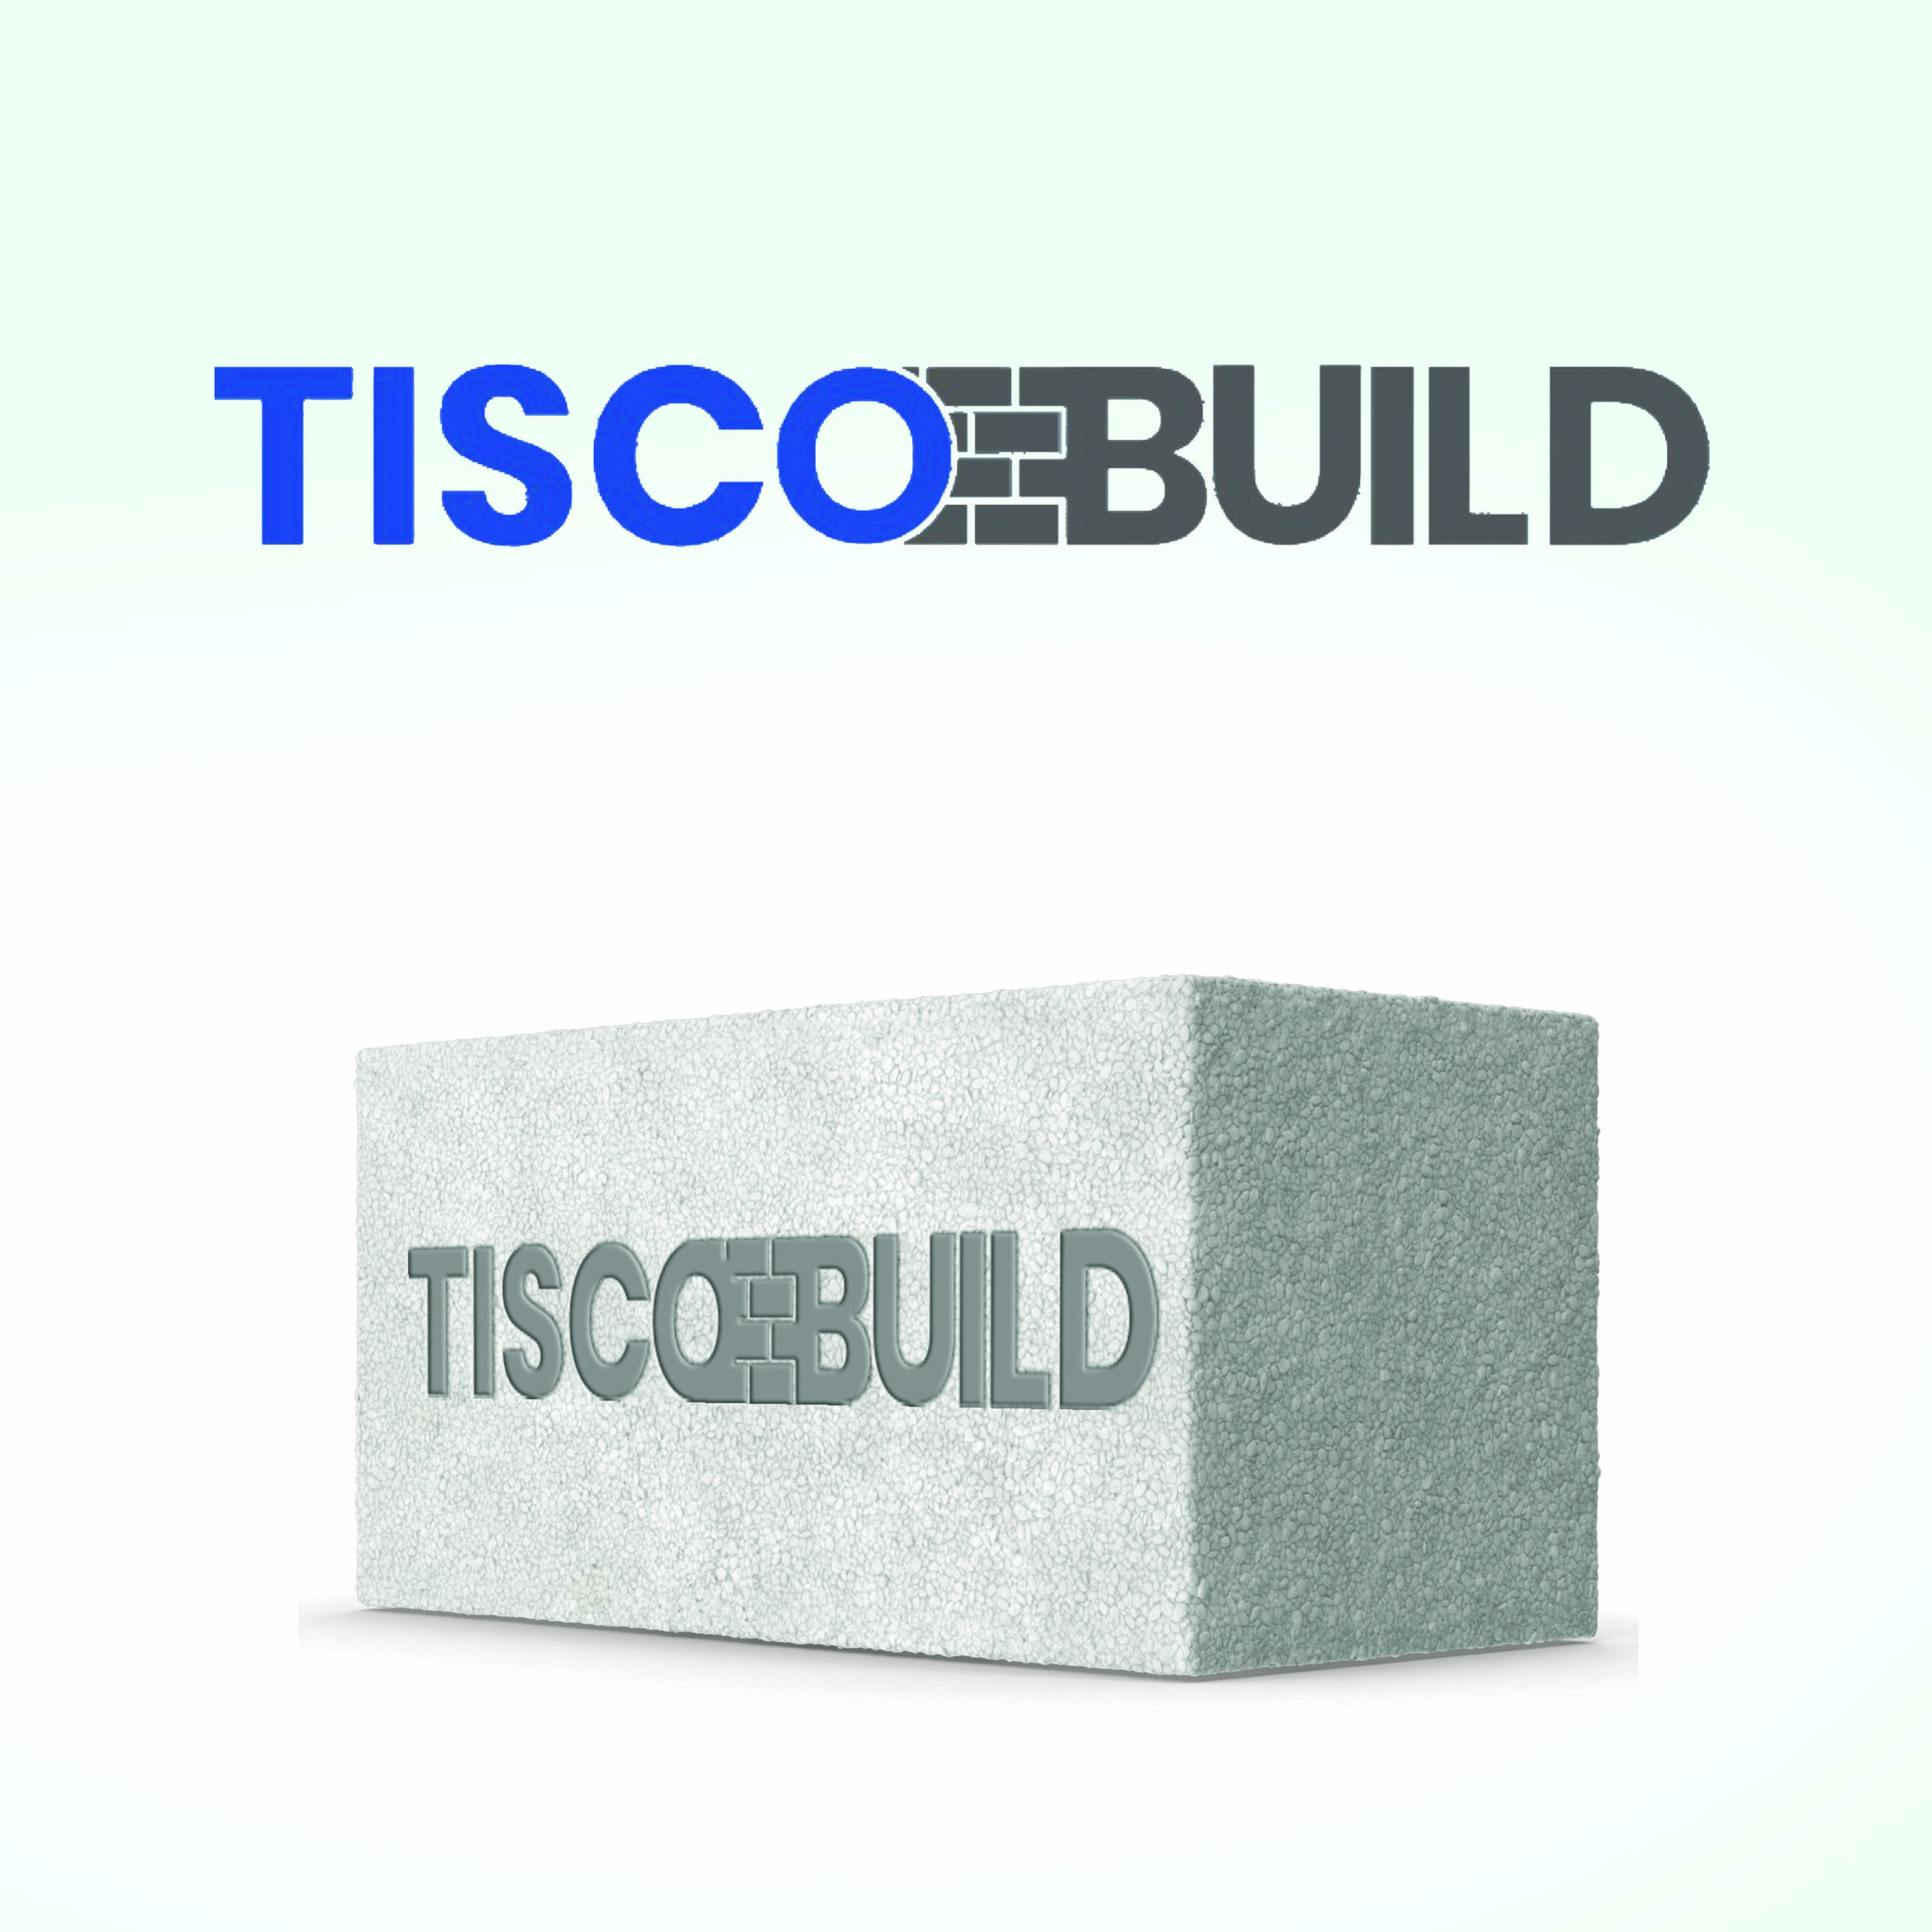 Tiscobuild